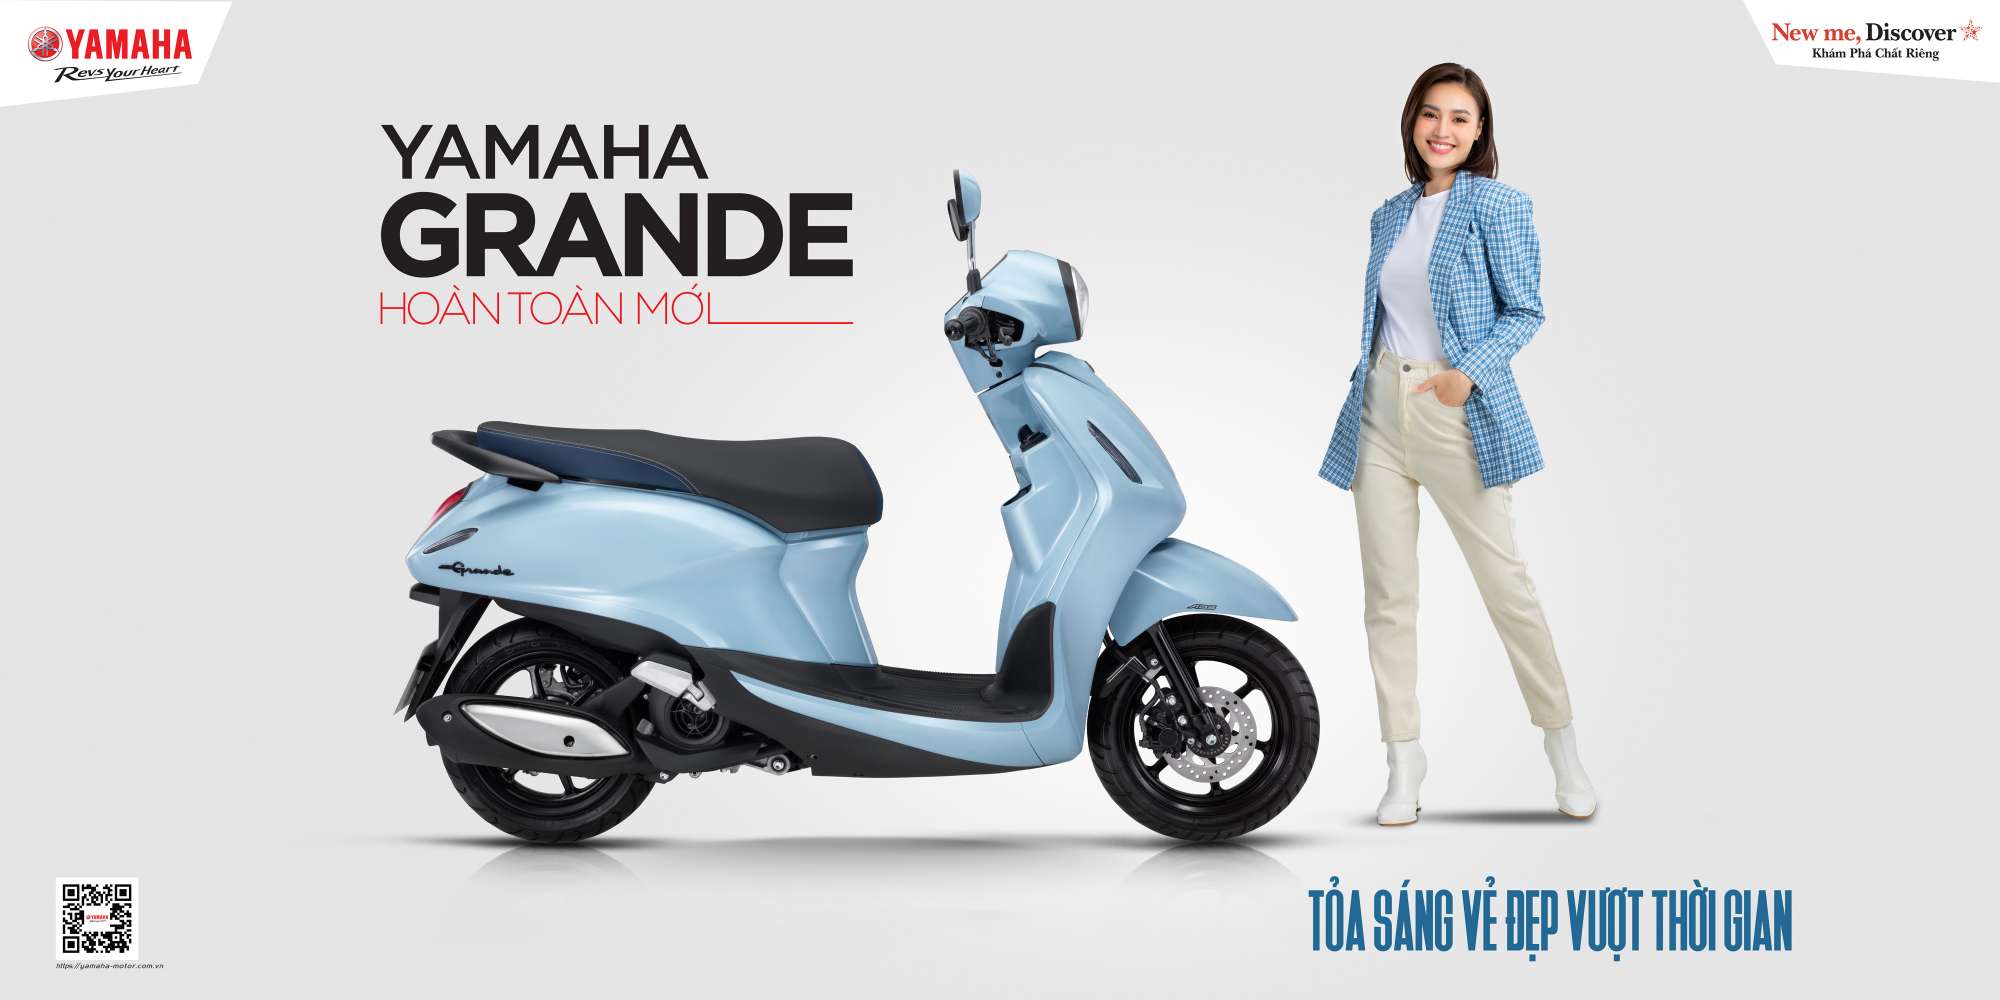 Yamaha Grande 2022 ra mắt: thay đổi kha khá thiết kế, 3 phiên bản, giá từ 45,9 triệu